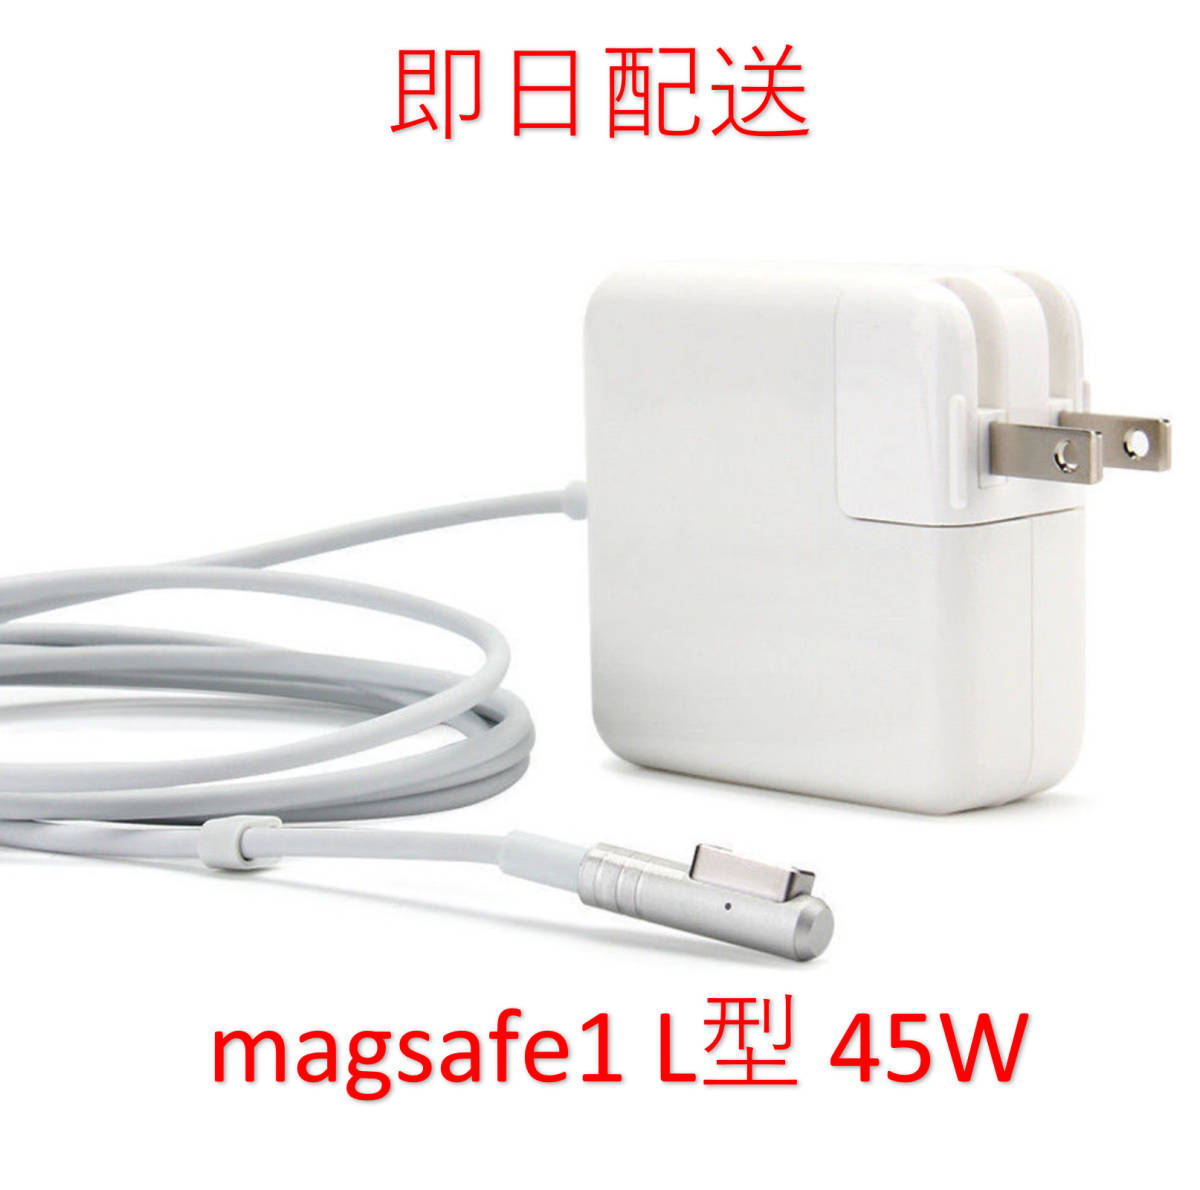 [ промышленные круги ][ бесплатная доставка ]L type Magsafe1 45W новый товар зарядное устройство MacBook Air 11 дюймовый 13 дюймовый 2008 2009 2010 2011 * источник питания AC адаптор 